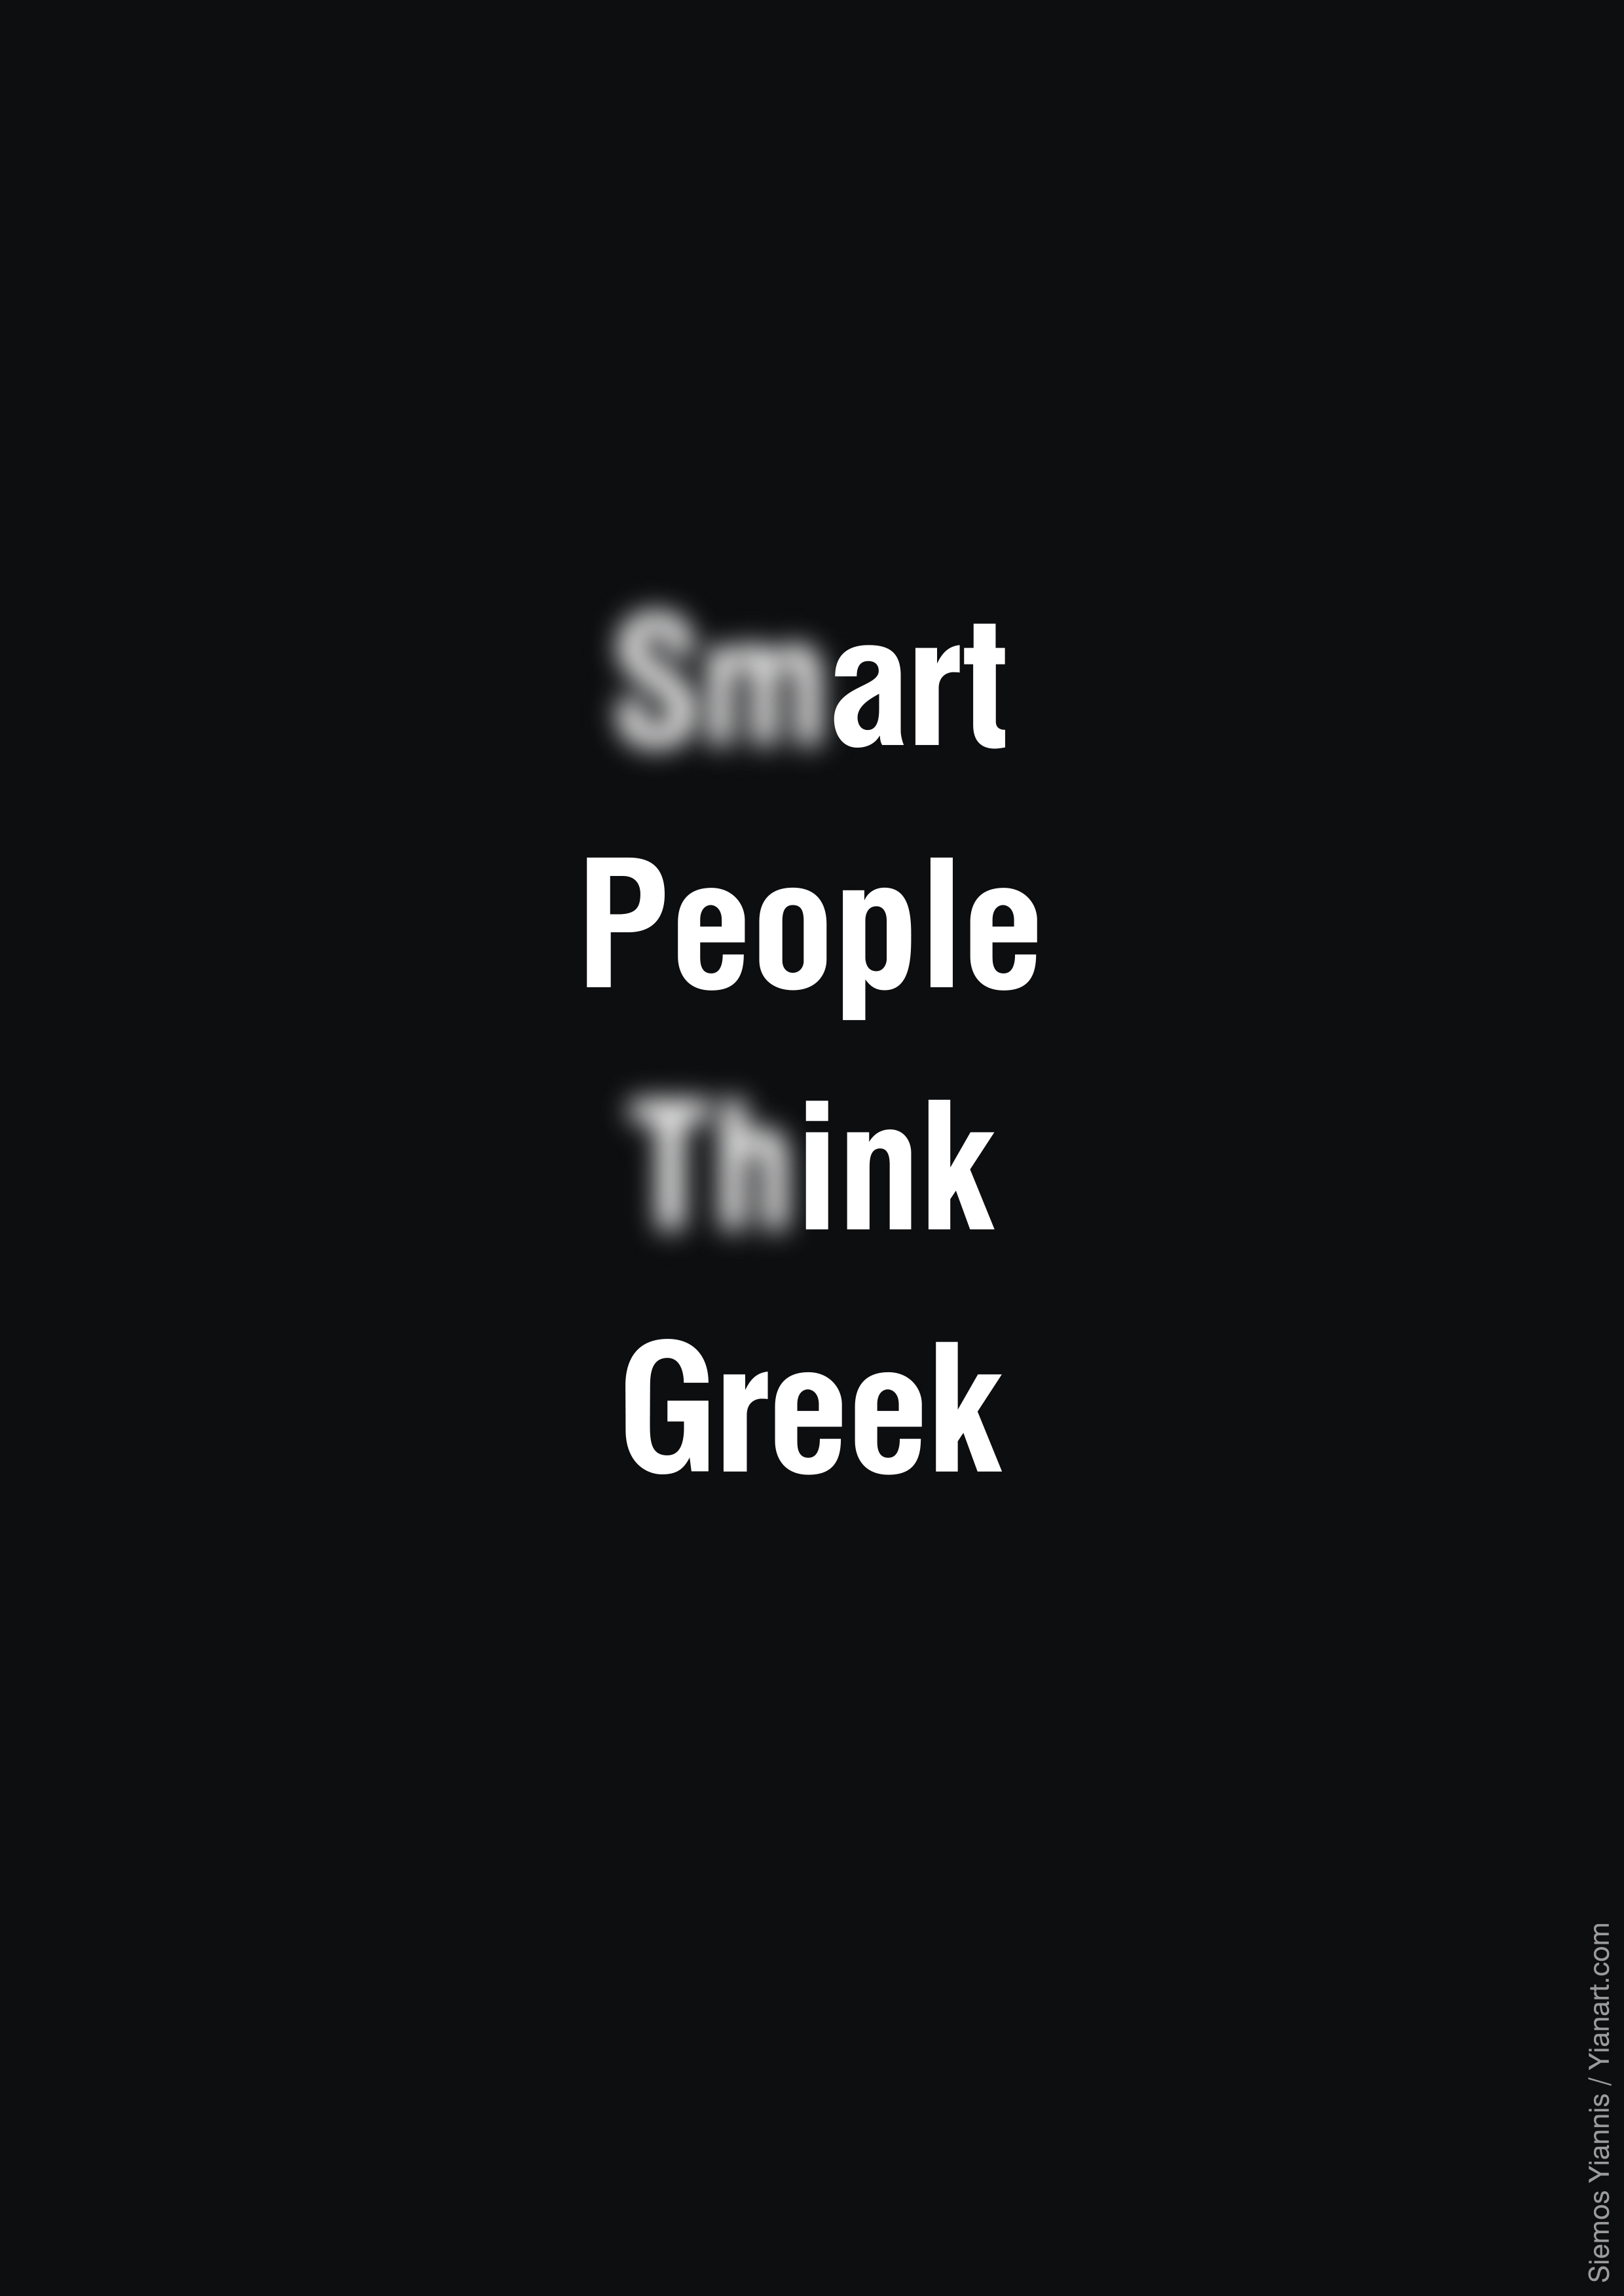 Think Greek_c_Yianart.com